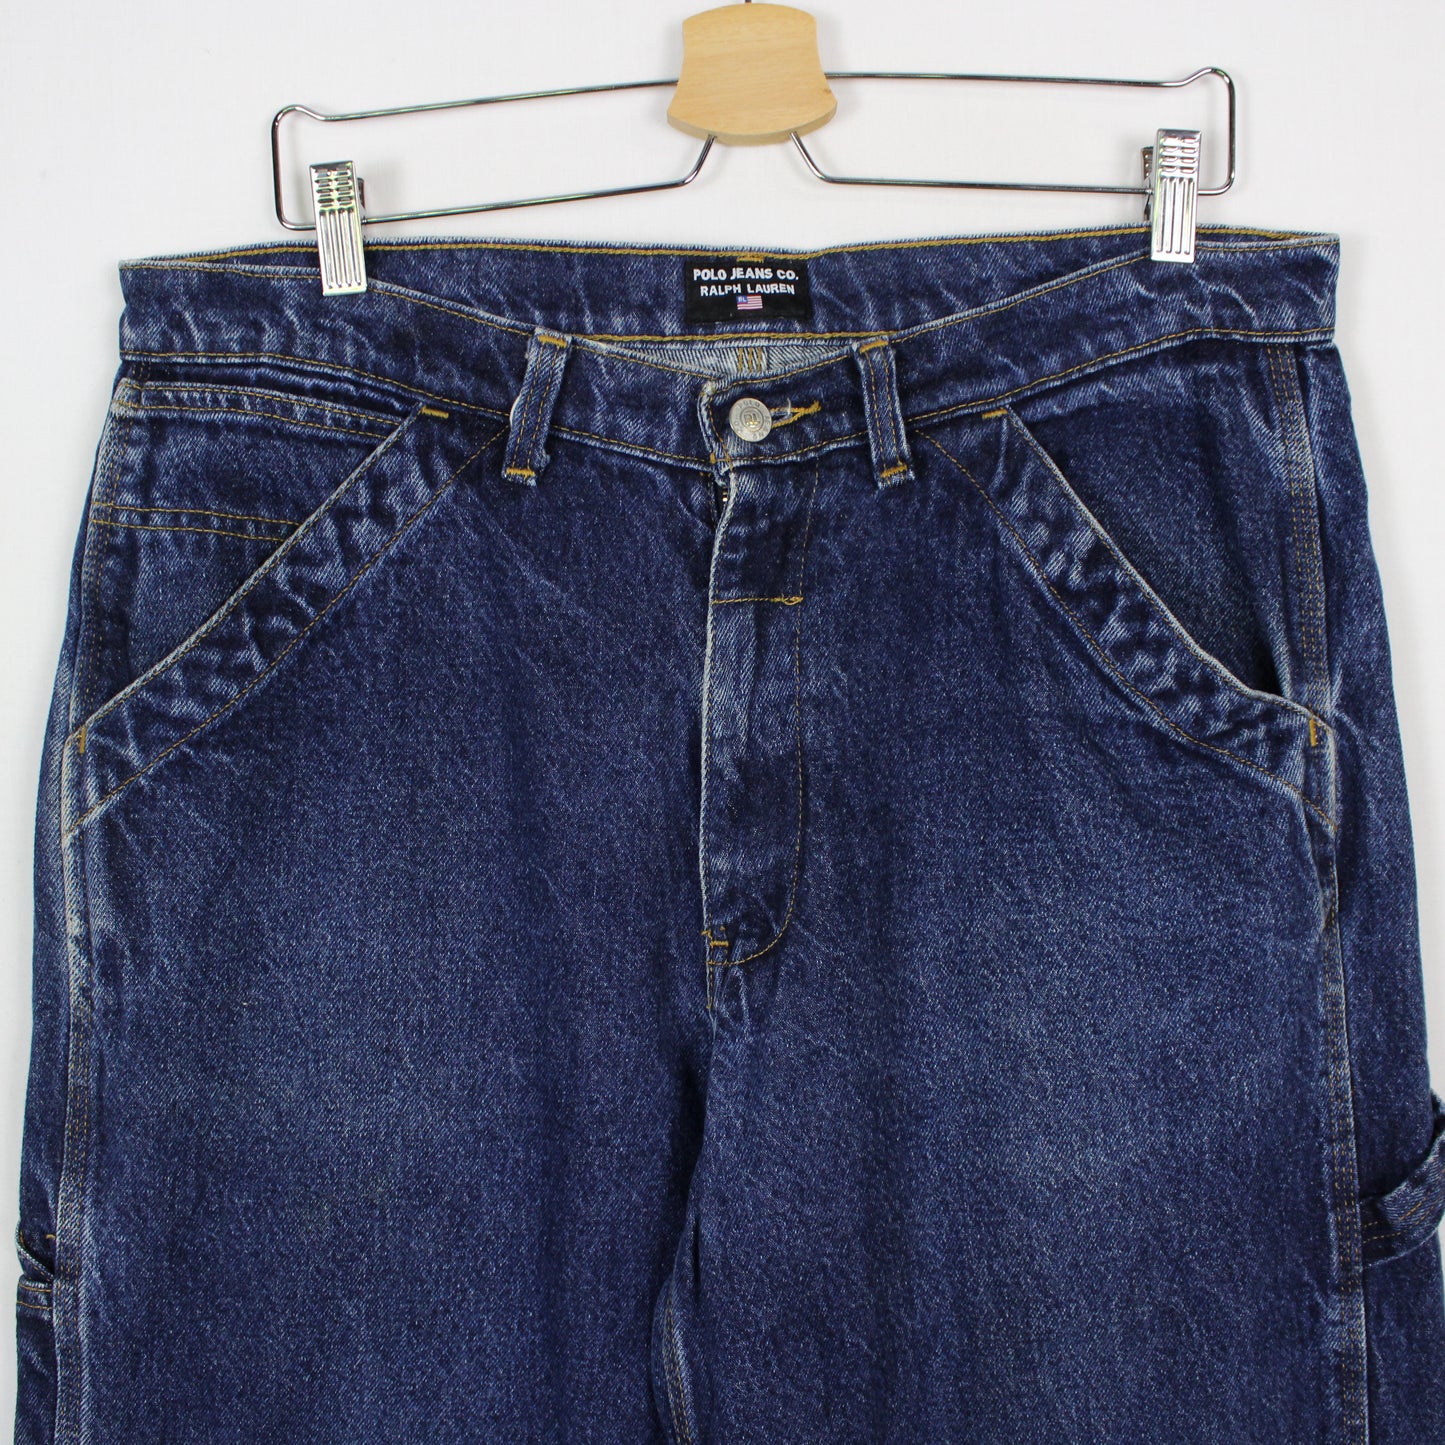 Vintage Polo Jeans Co Carpenter Pants - 33x34'